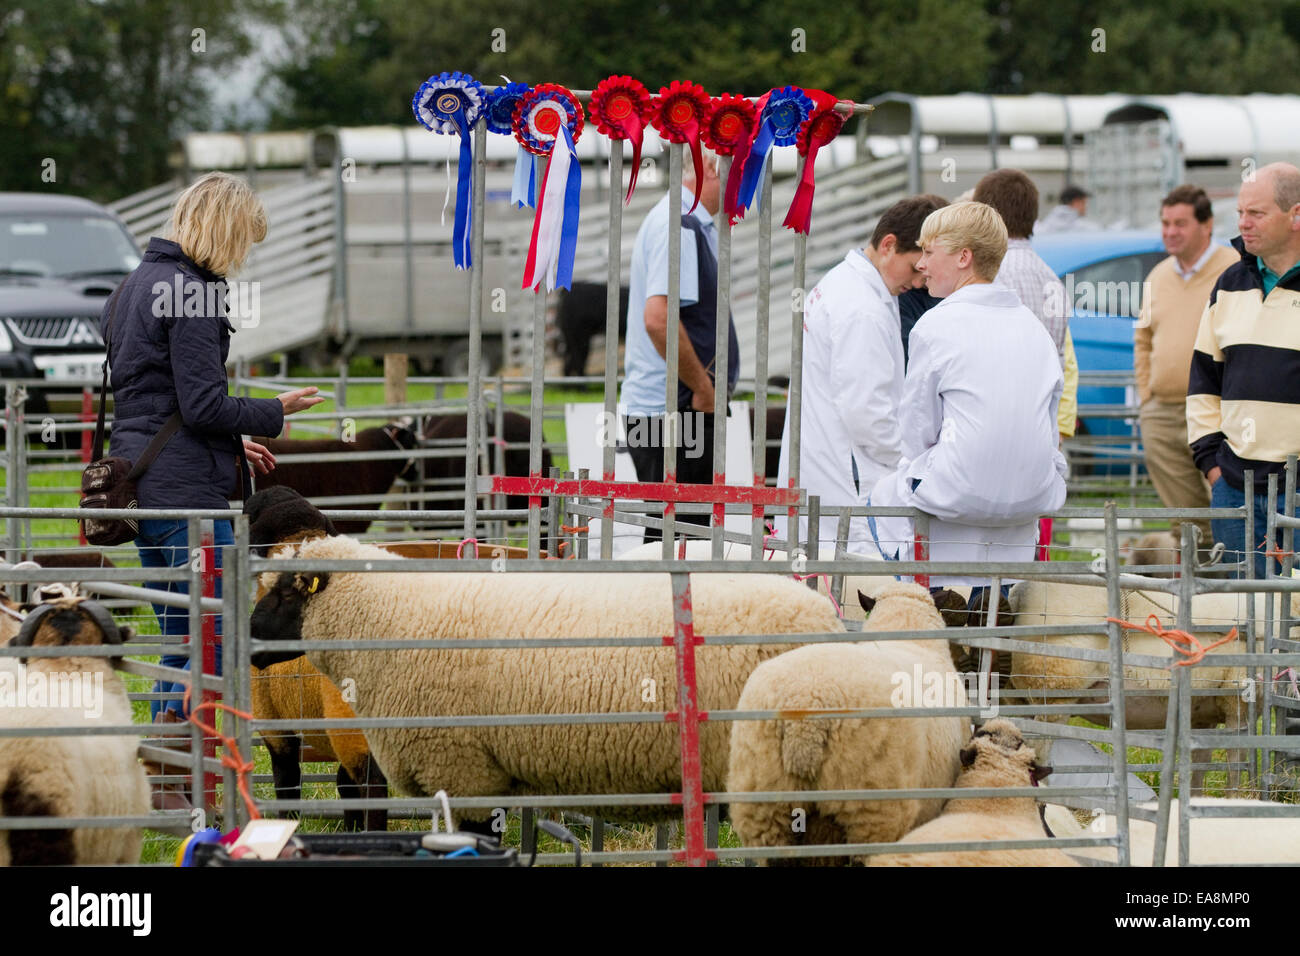 Avec de nombreux moutons gagnante à Llandysul rosettes Show, prise en septembre 2014. Carmarthenshire, Pays de Galles Banque D'Images